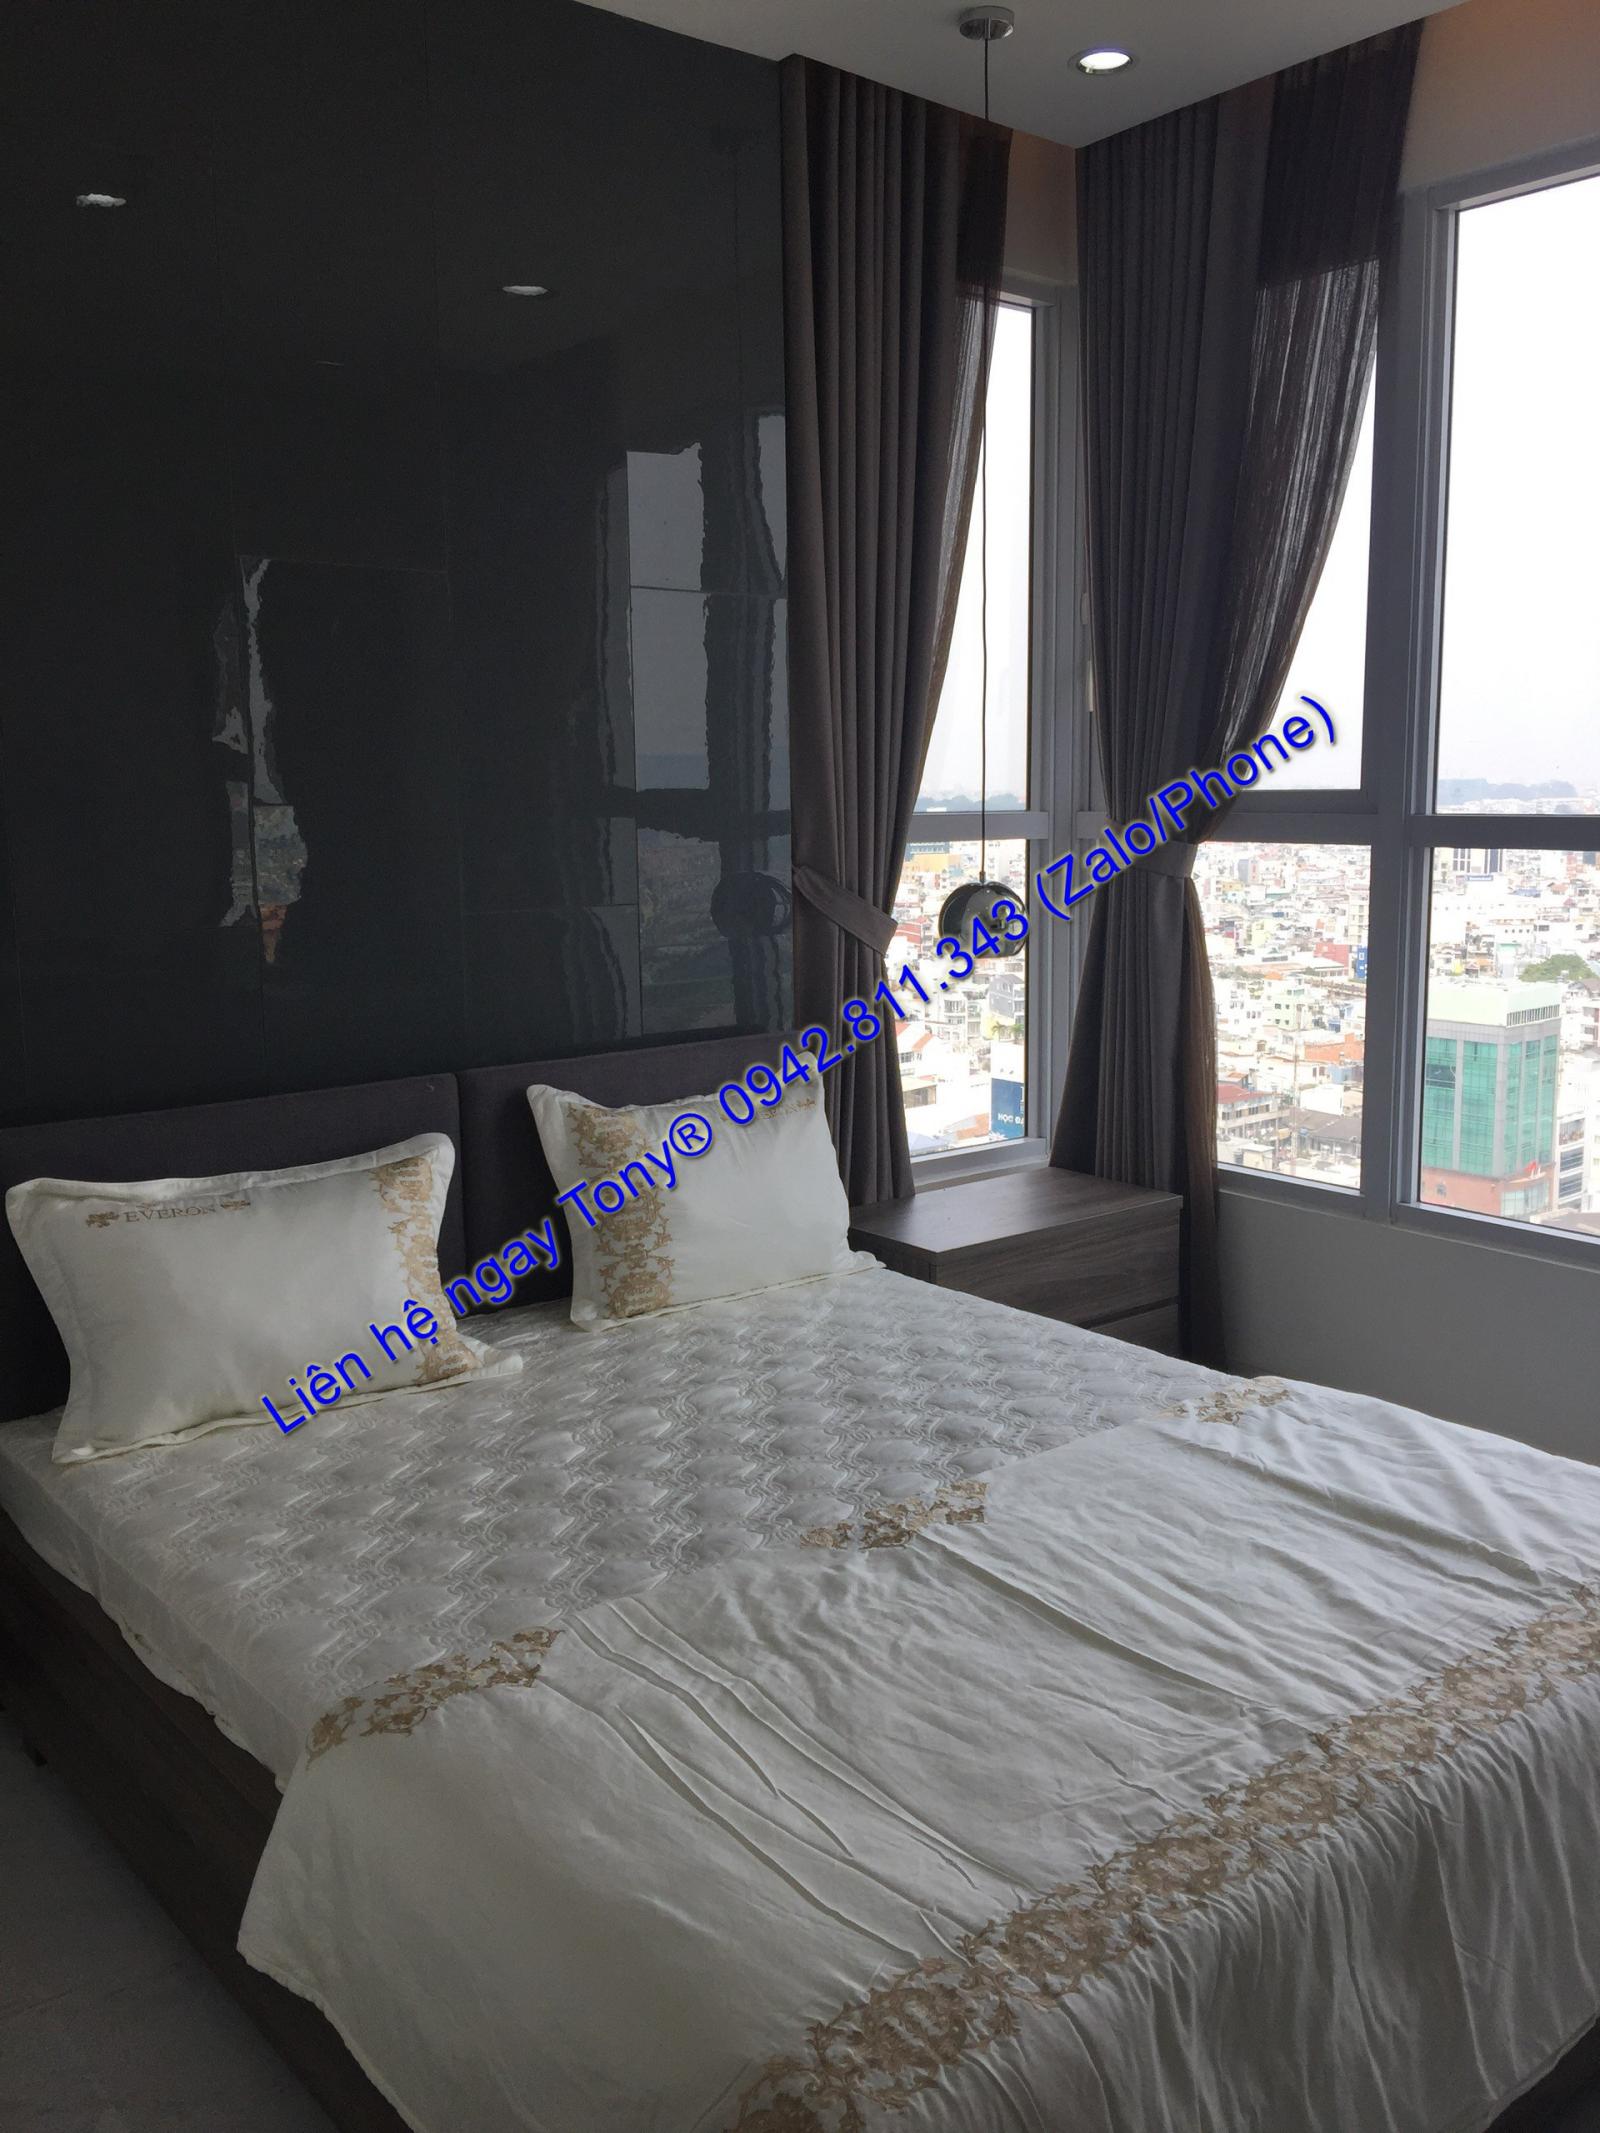 🔰🔰 Cho thuê căn hộ Novaland Phú Nhuận The Prince Residence 3 phòng ngủ / 2WC căn góc full đồ #22 Triệu / tháng 🔰🔰